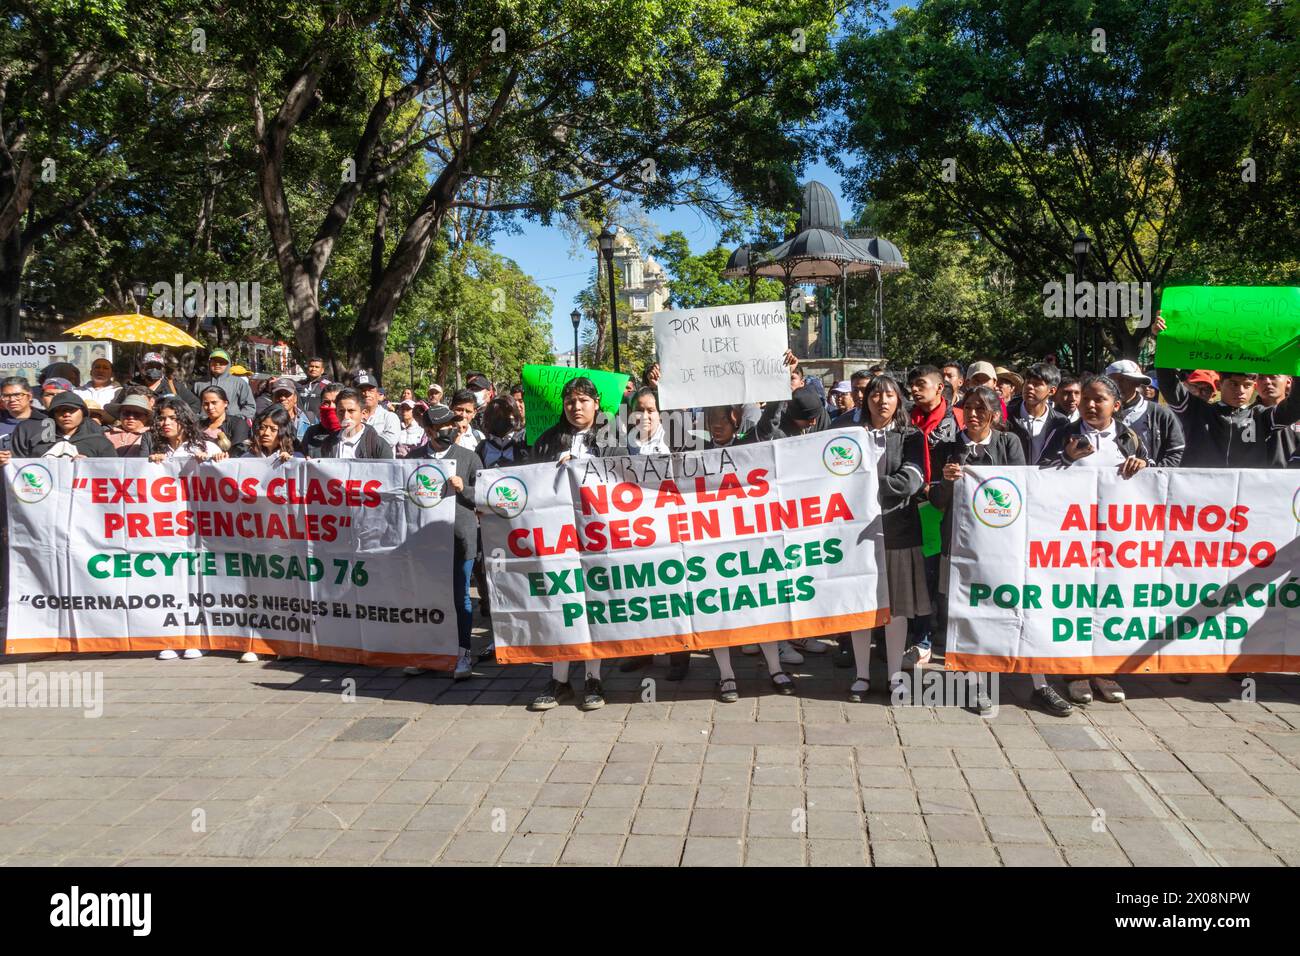 Oaxaca, Mexiko - Studenten trafen sich vor dem Regierungsgebäude von Oaxaca, um ein Ende des Online-Kurses zu fordern. Sie sagten, sie können mit fac besser lernen Stockfoto